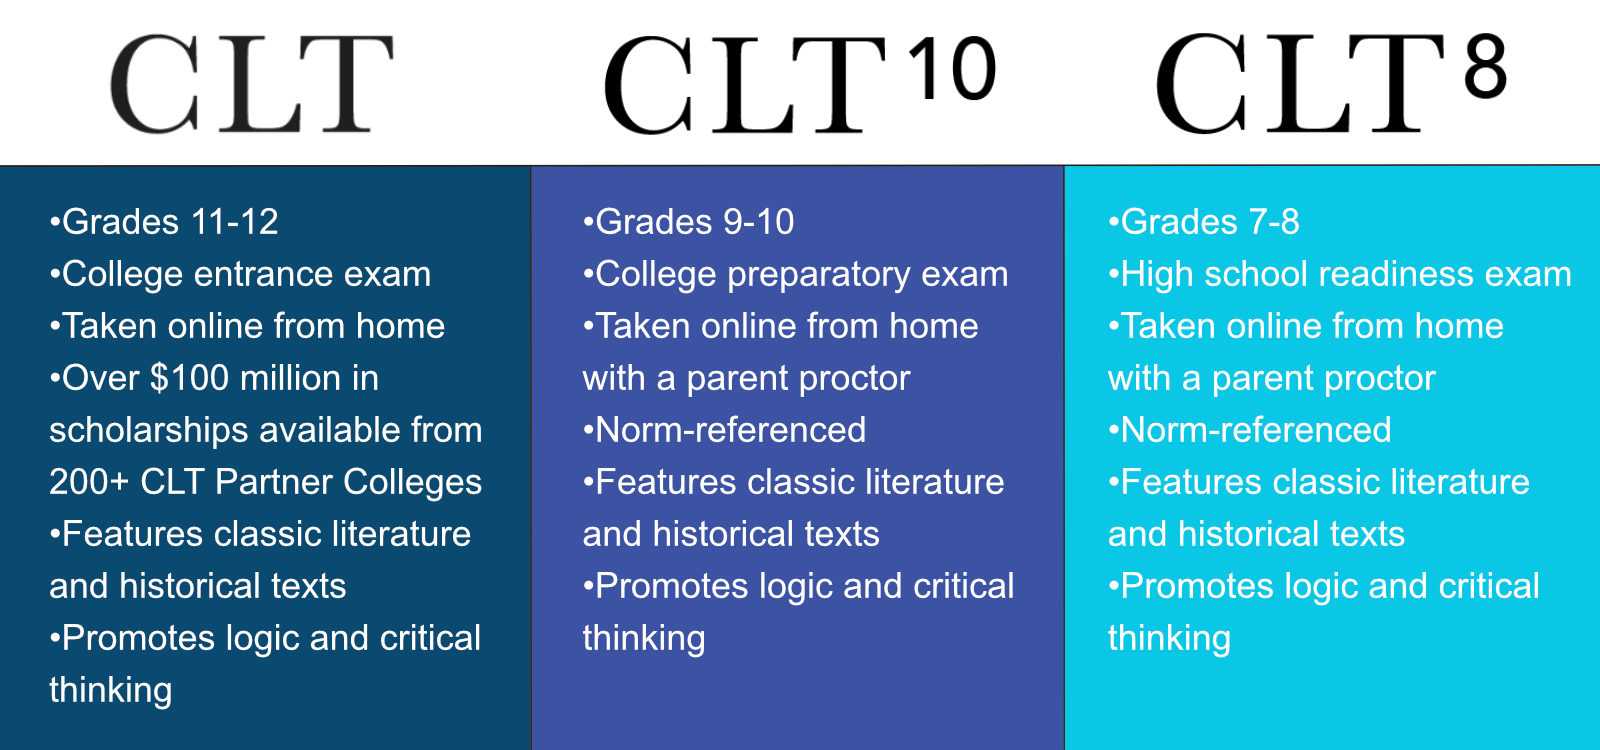 CLT 8 10 Quick Facts v3